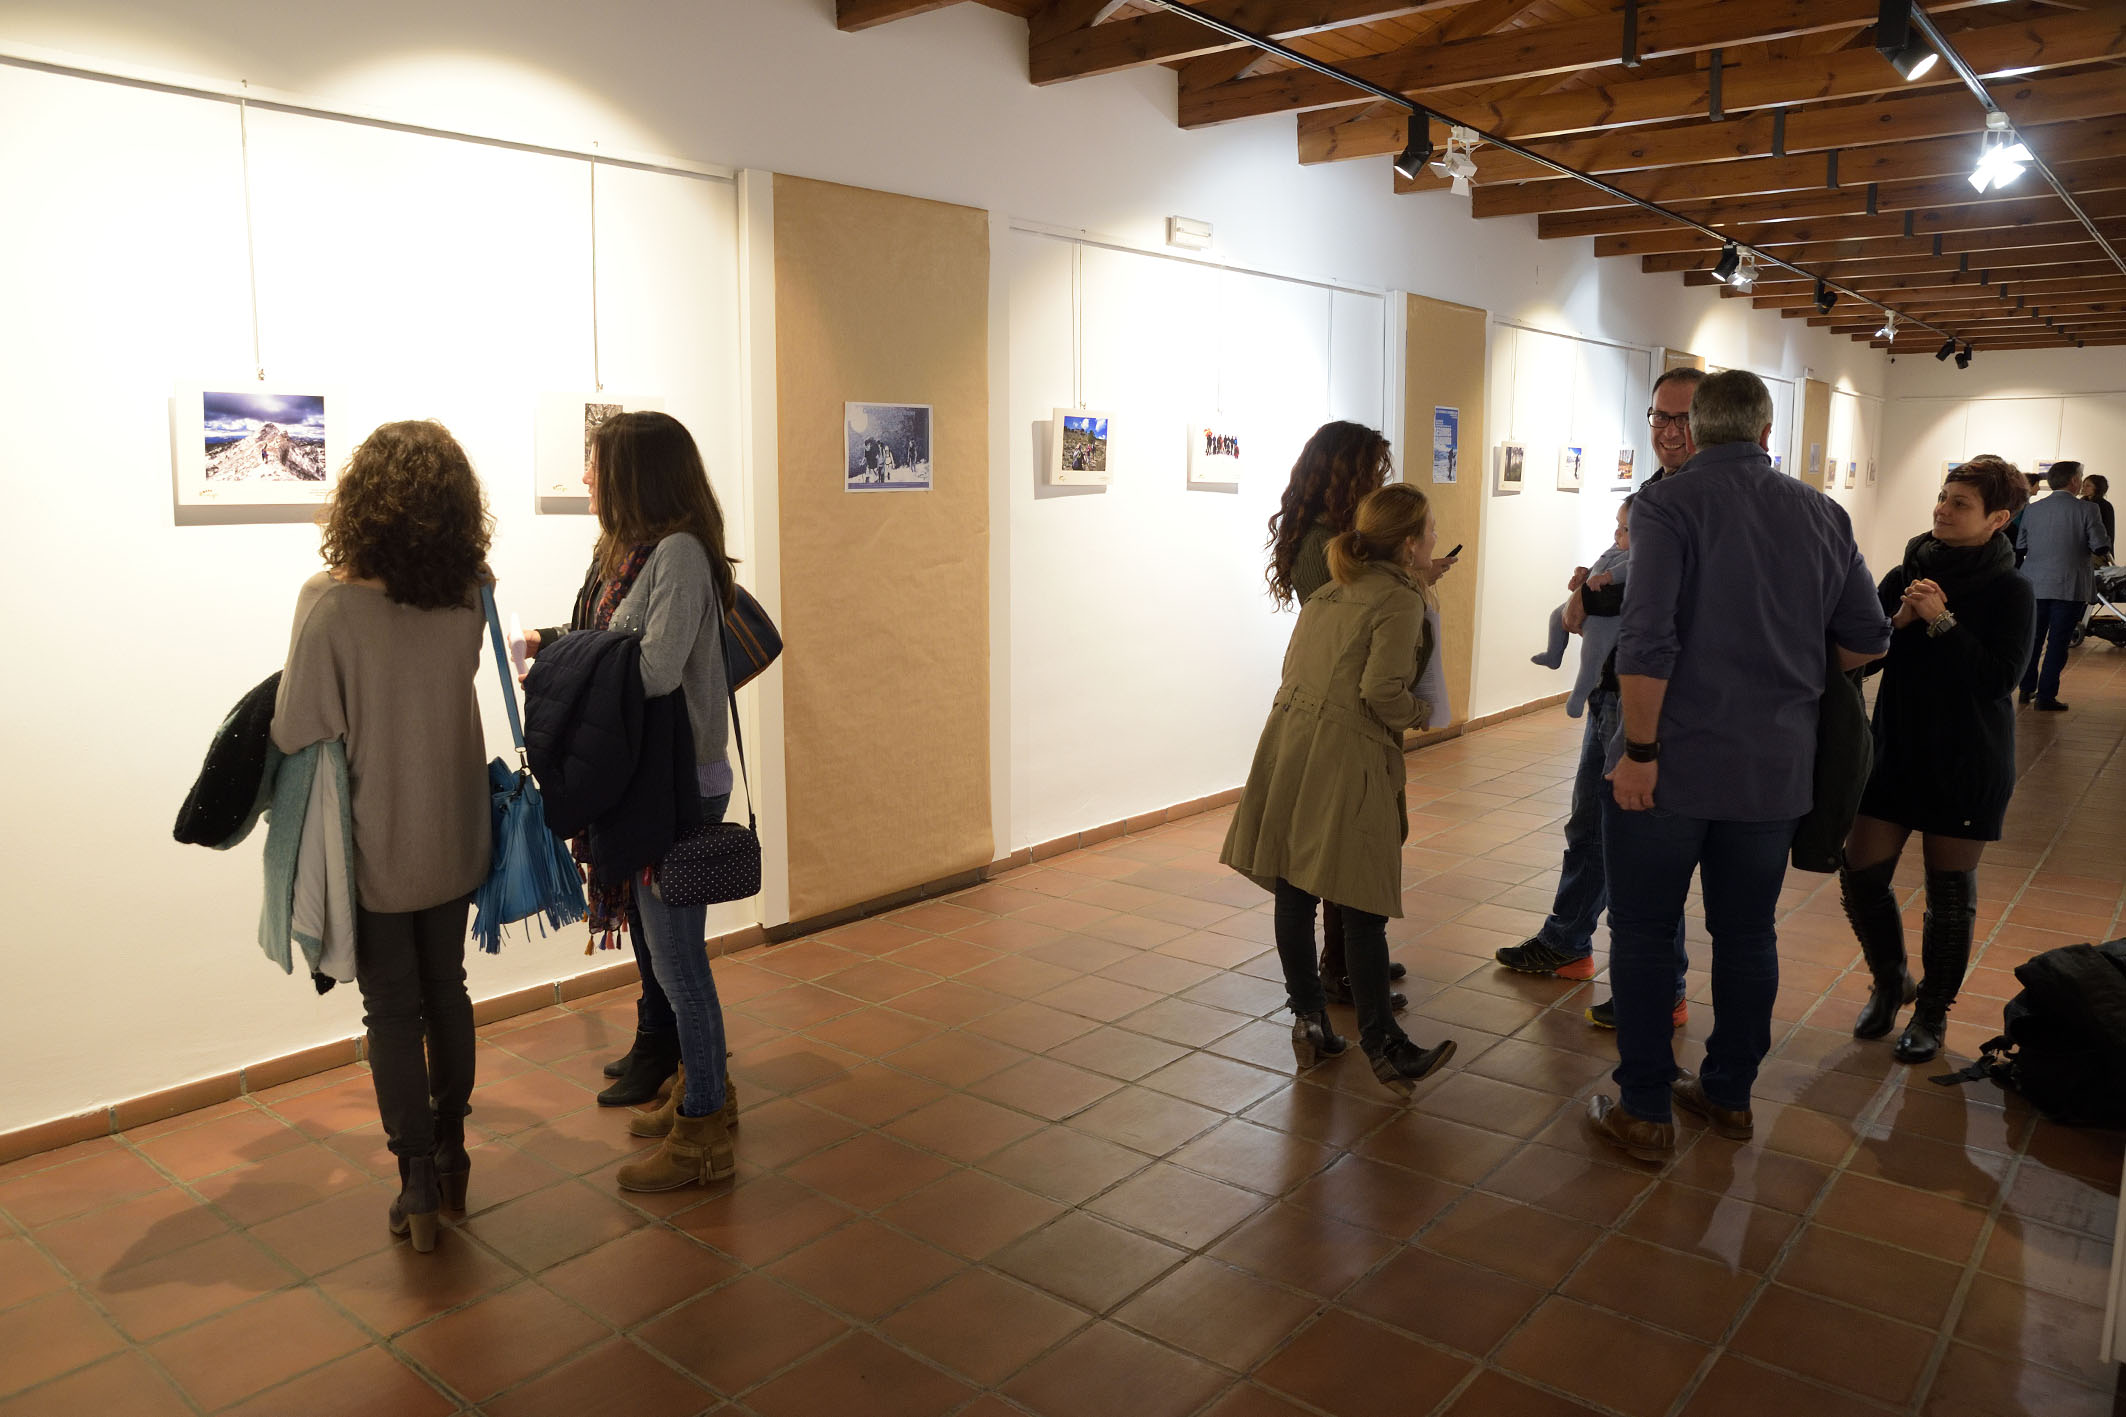 Seis años de senderismo, resumidos en una exposición fotográfica en Argamasilla de Alba